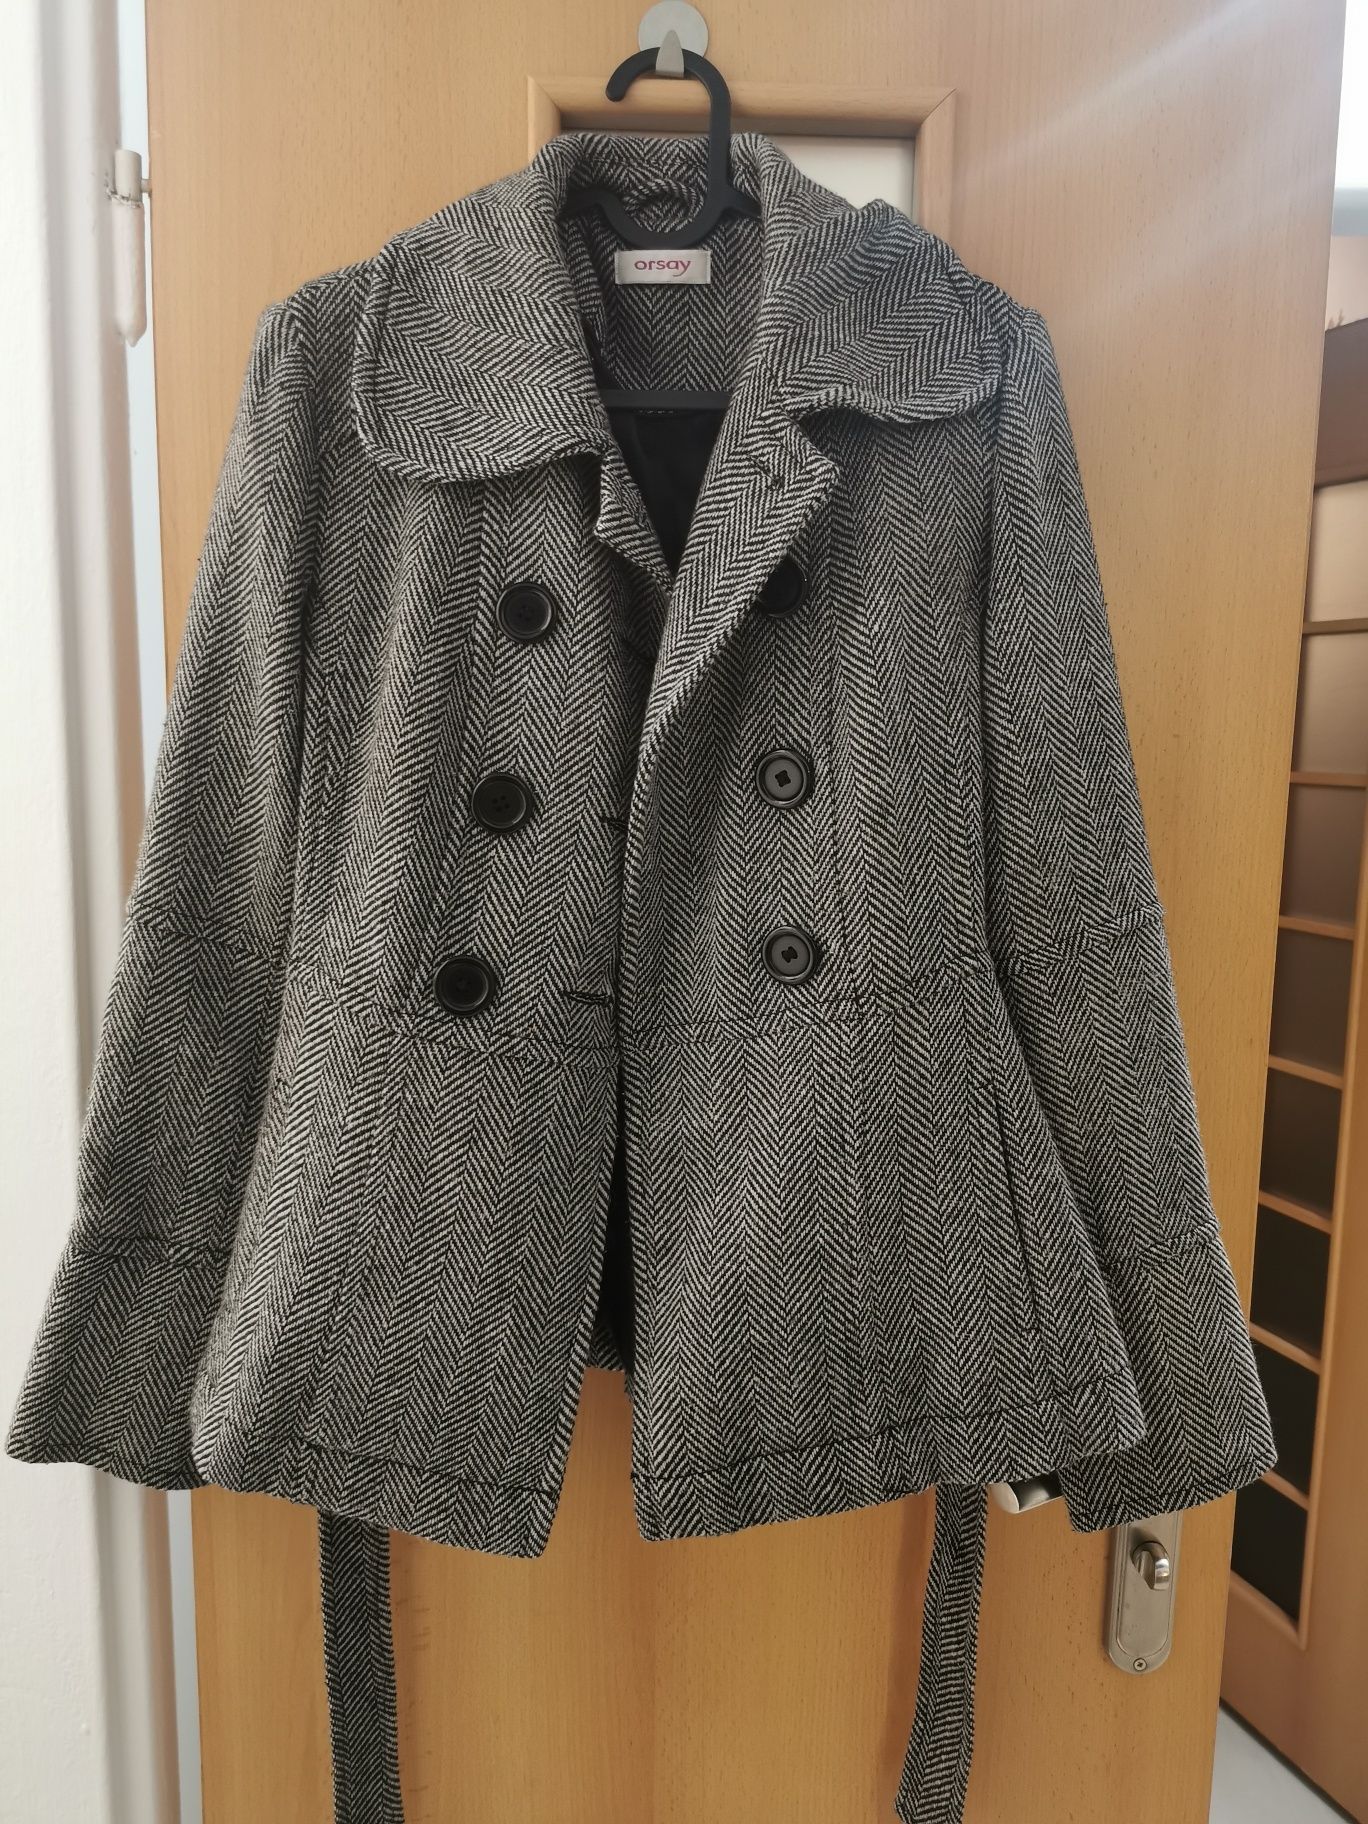 Krótki płaszcz w pepitkę, Orsay, rozmiar S